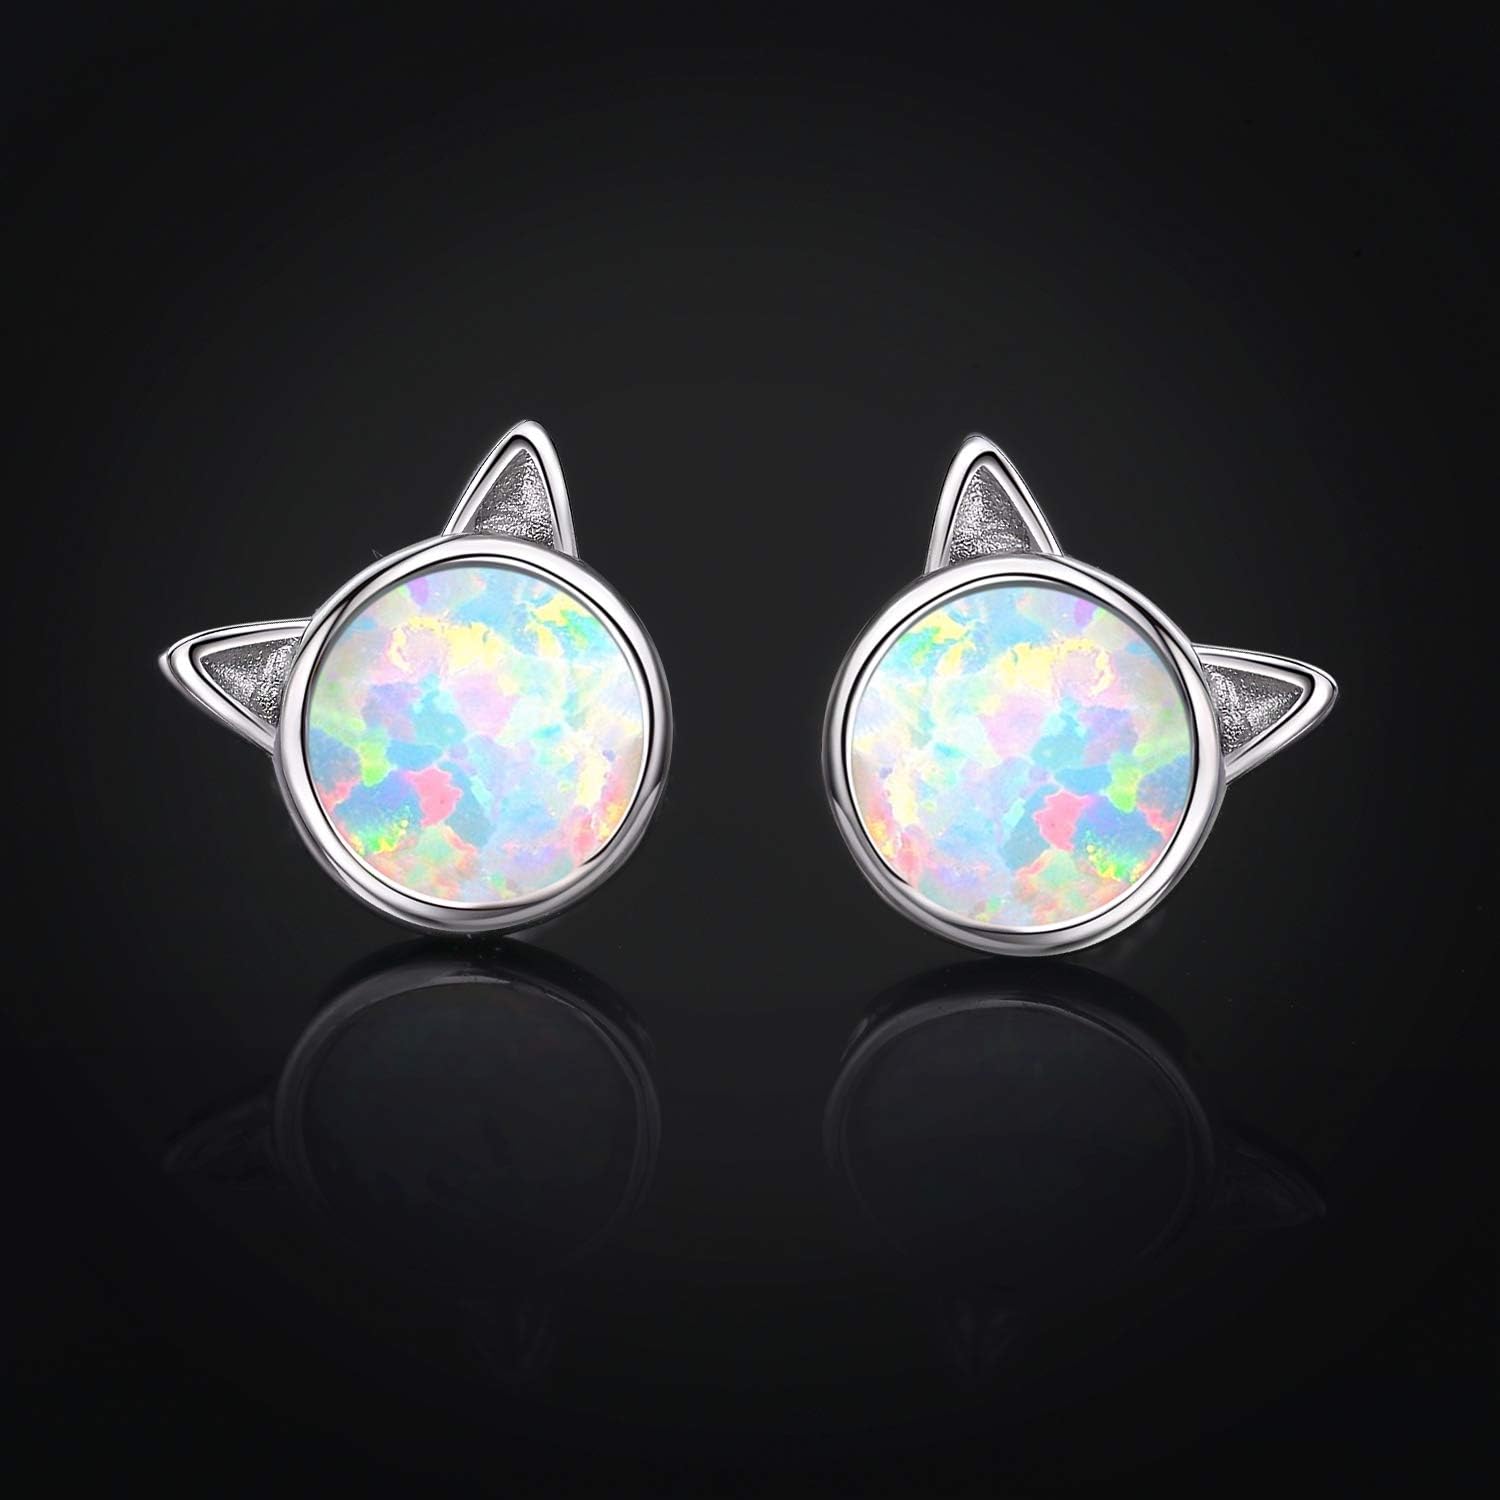 Cat/Mouse/Owl Opal Earrings Sterling Silver Cute Animal Opal Stud Earrings Hypoallergenic Opal Earrings Opal Jewelry Gifts Graduation Gifts for Women Girls